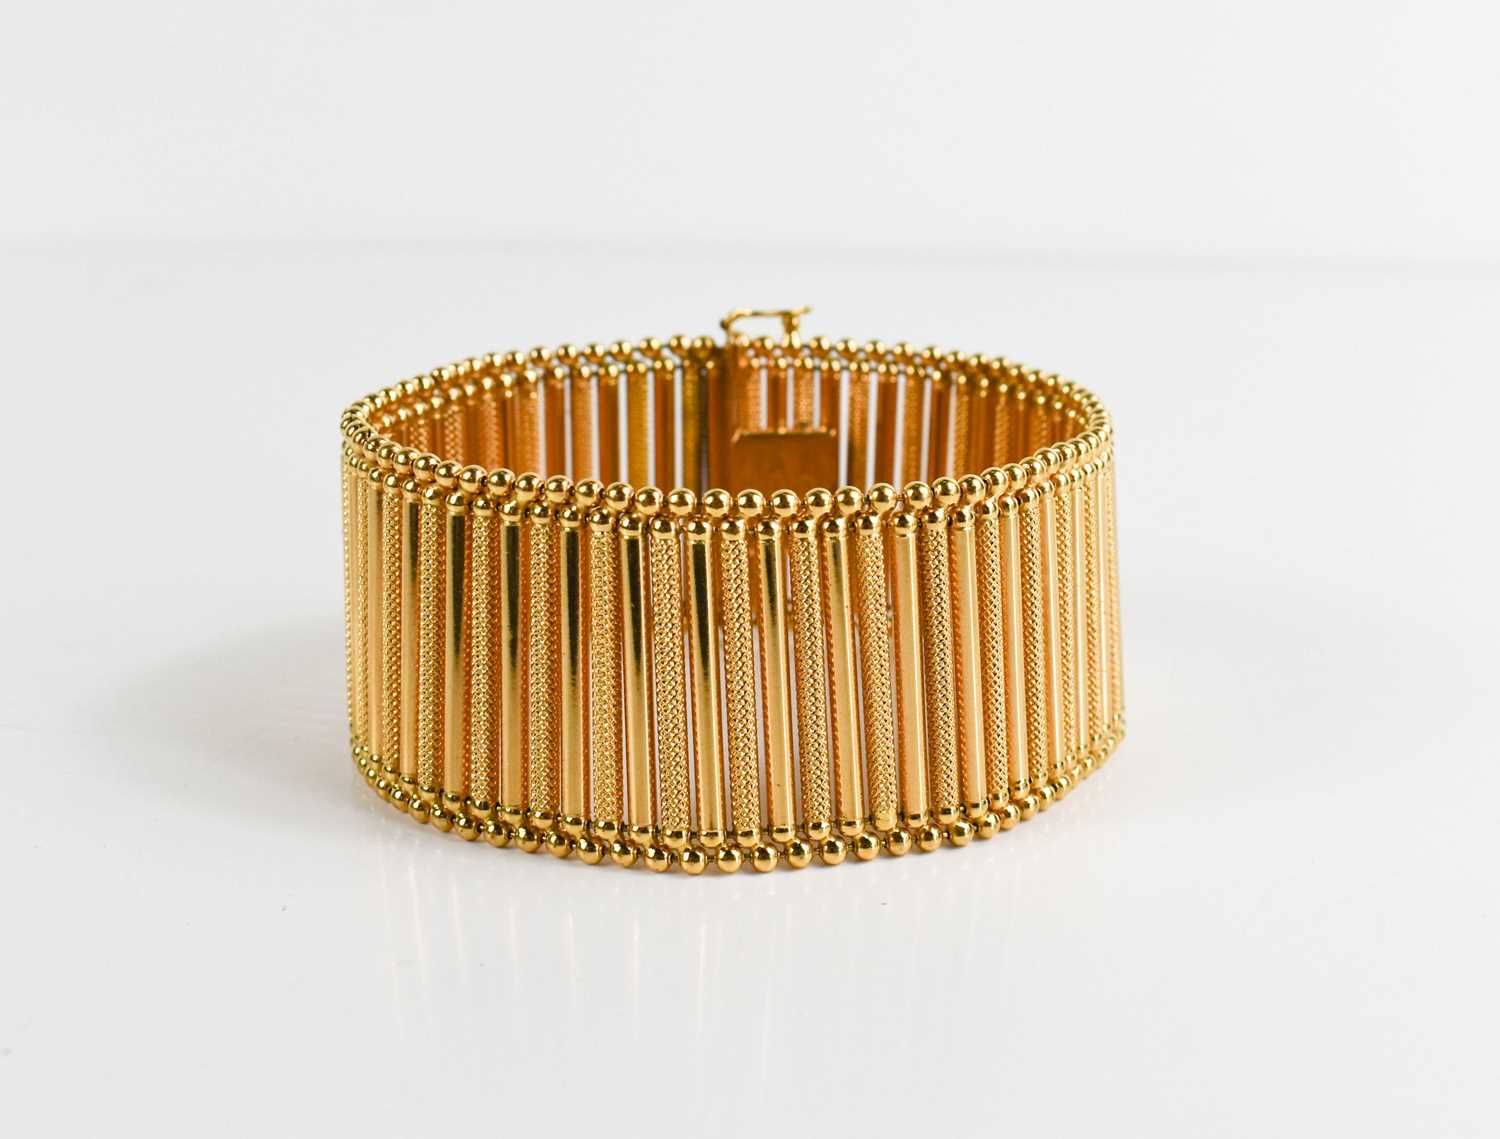 An 18ct gold bar link bracelet, plain links interspersed with machine engraved decoration, slide